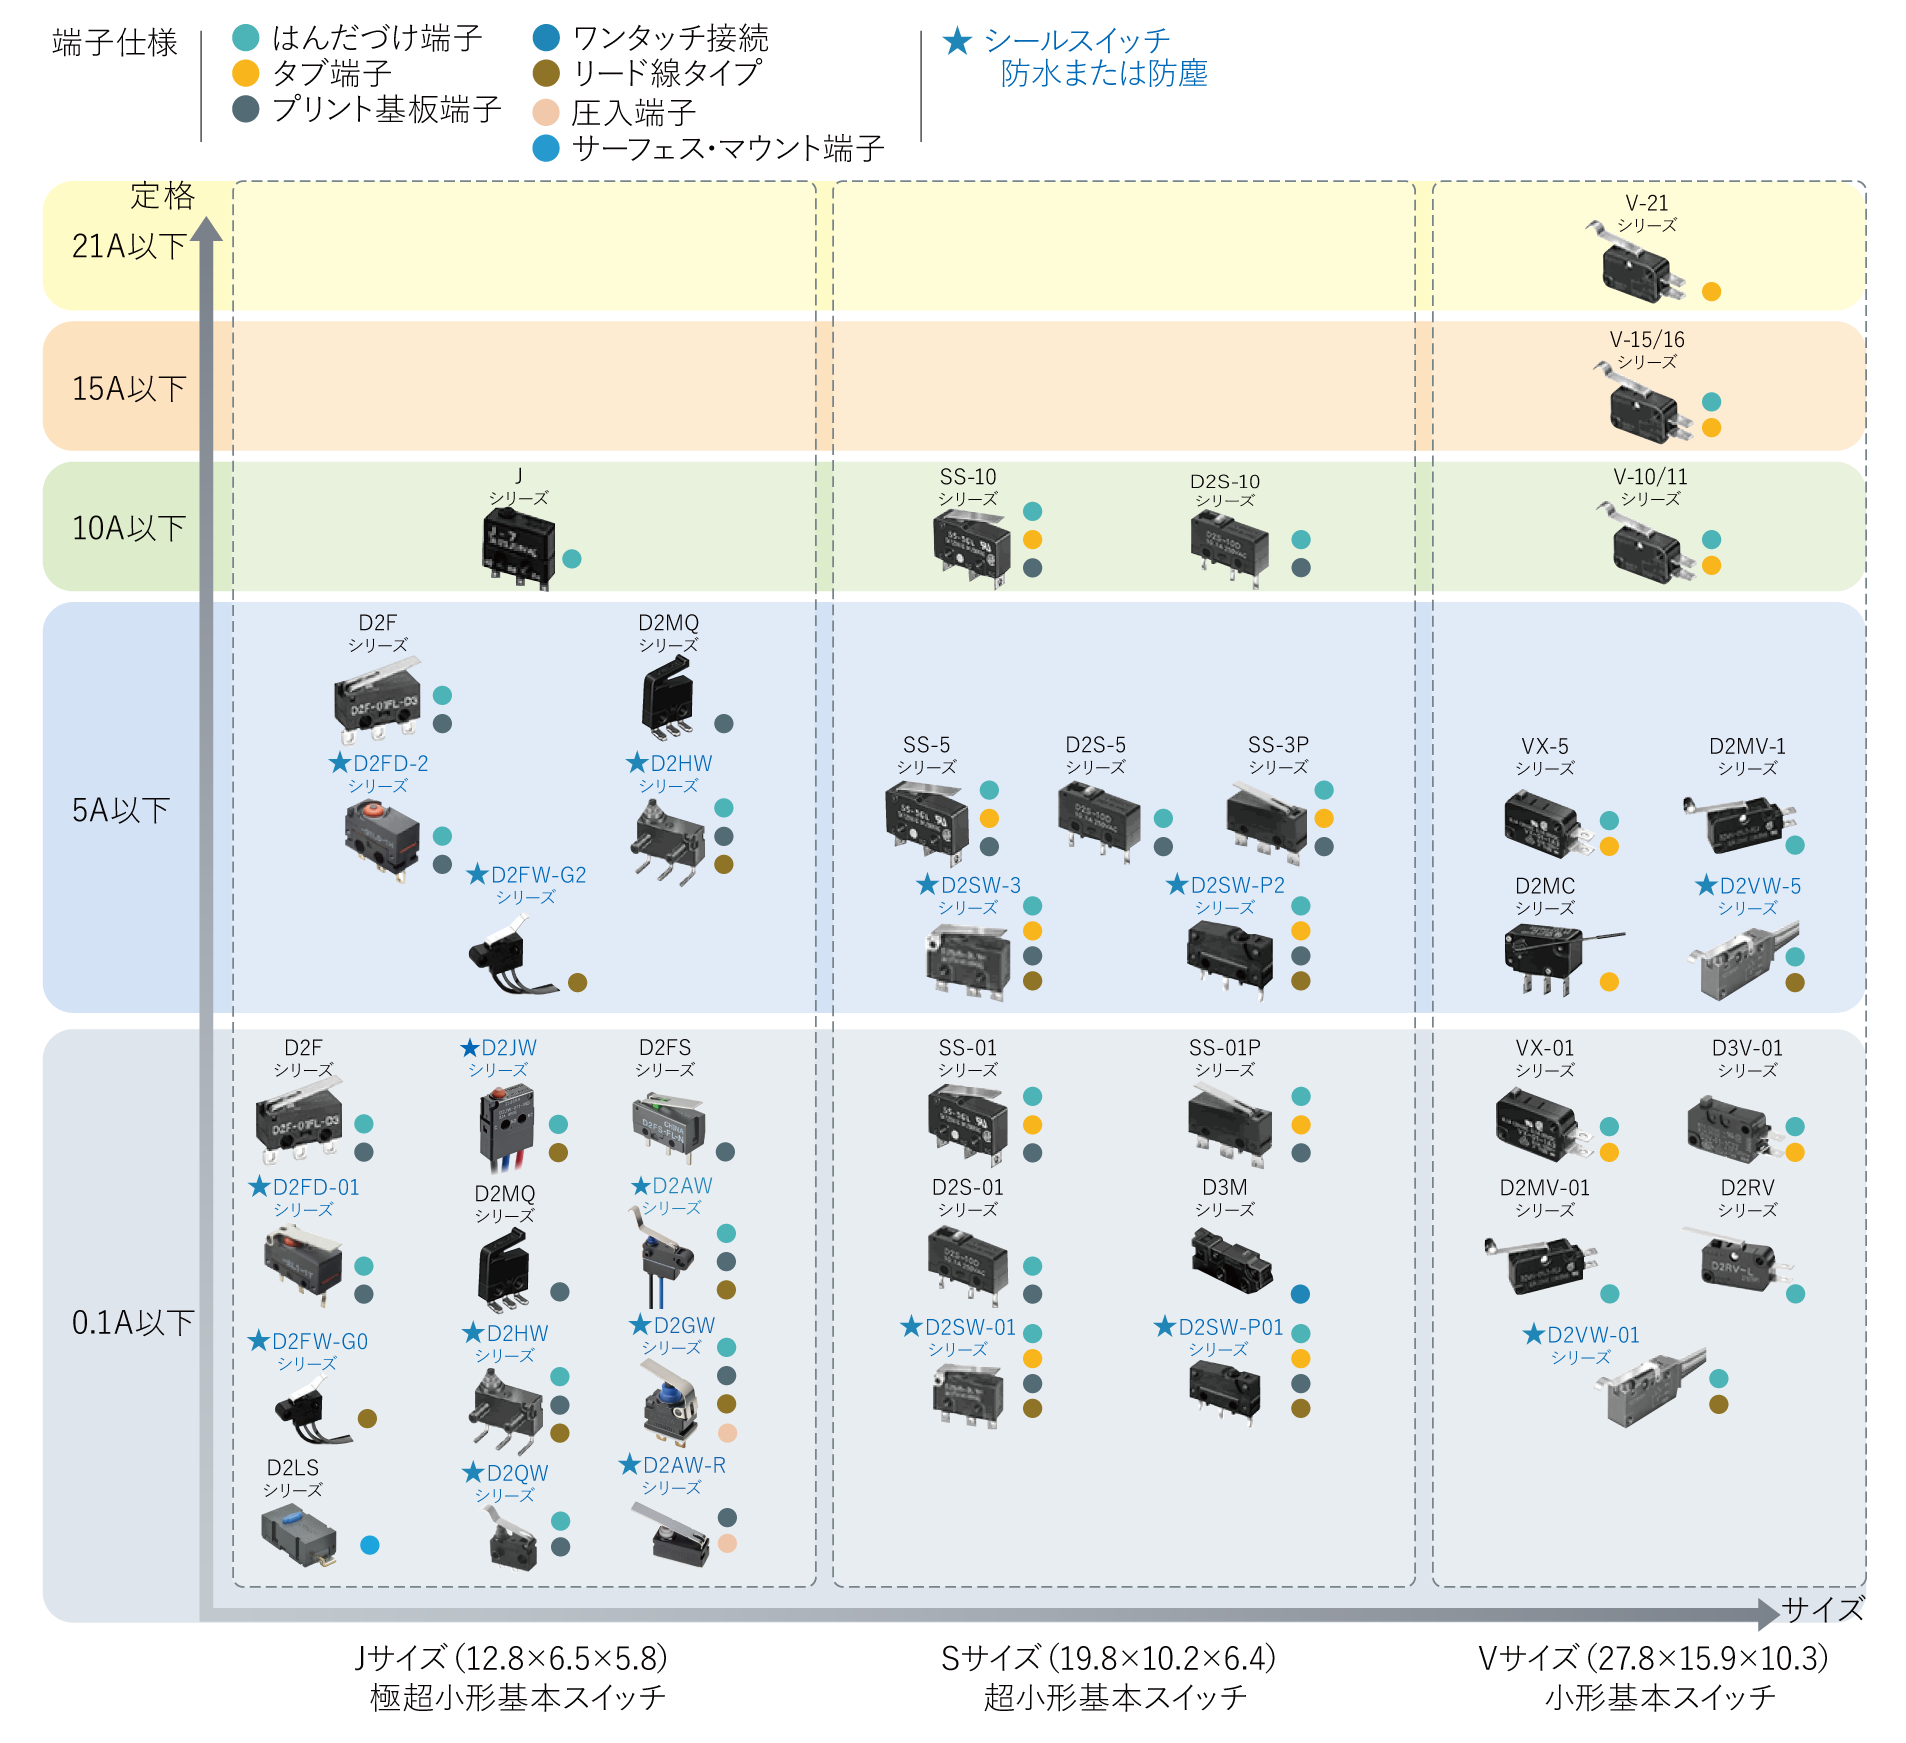 マイクロスイッチ分類表 | オムロン電子部品サイト - Japan